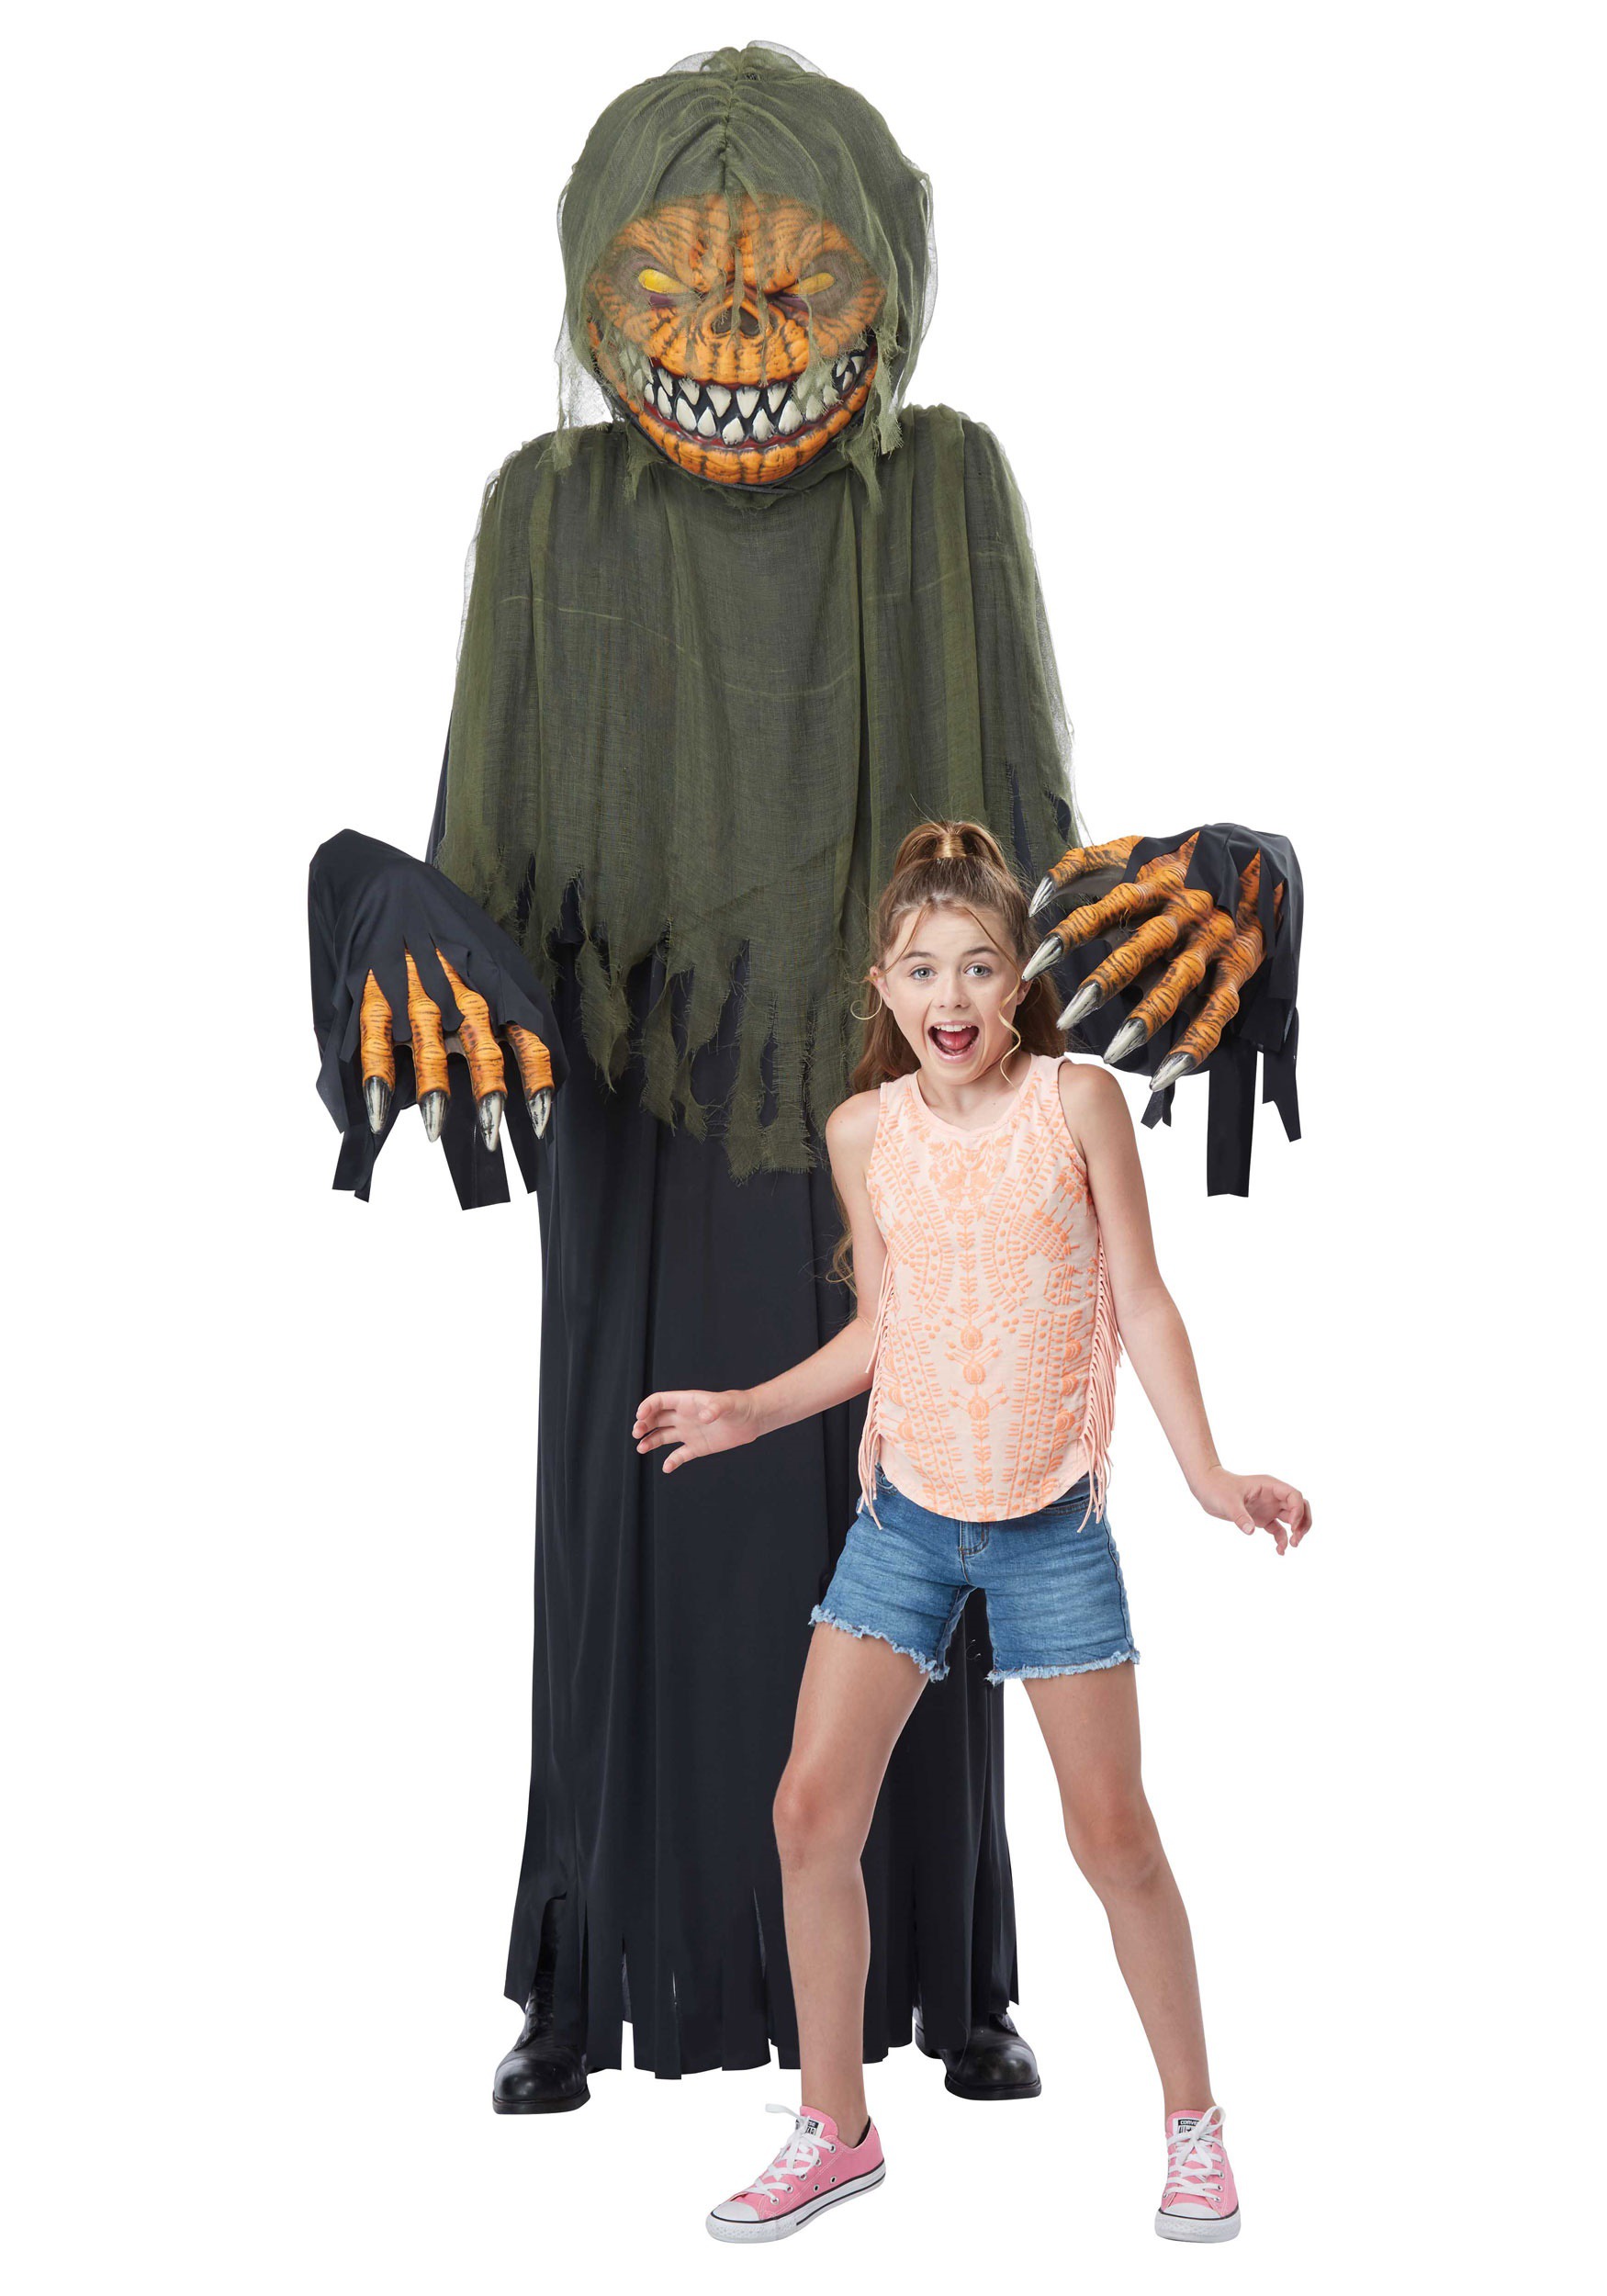 20 Top Giant Creepy Halloween Costumes